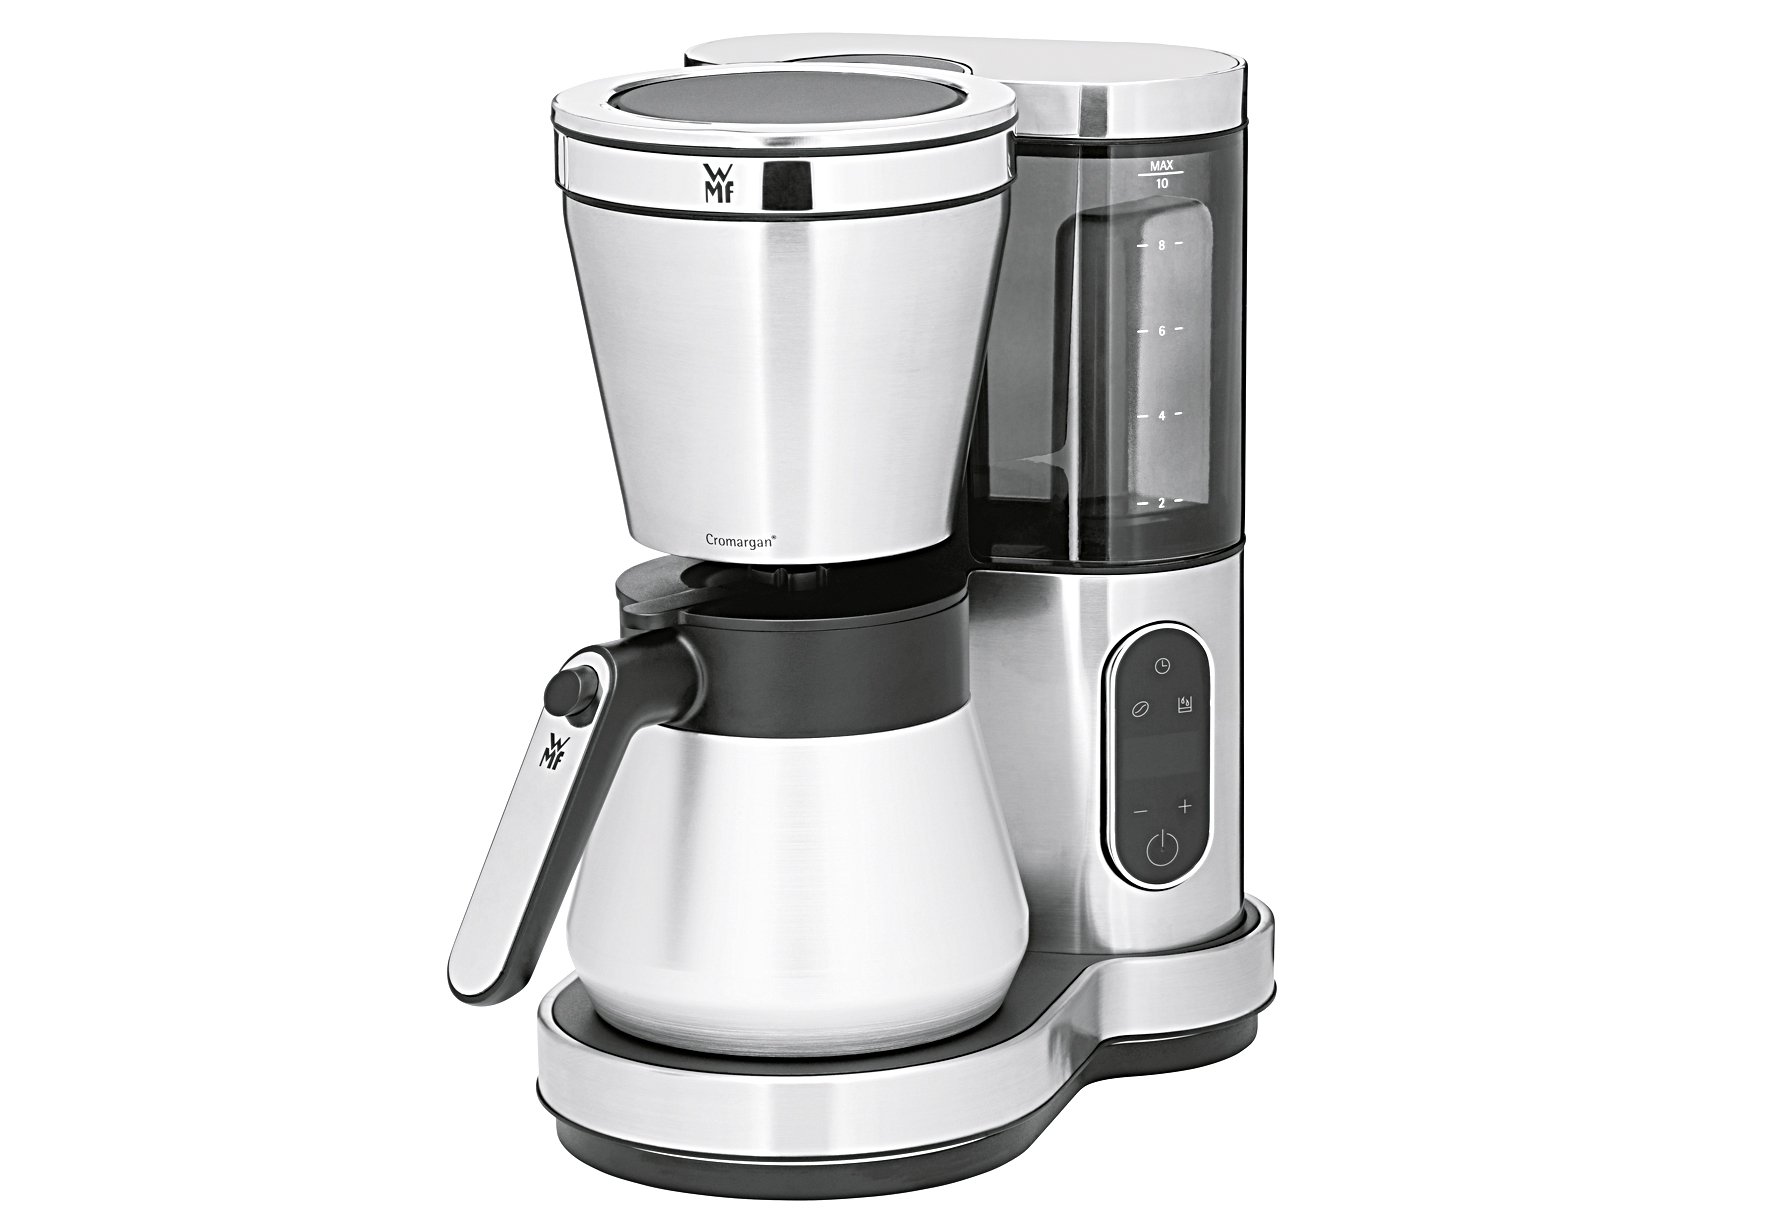 WMF 412330011 Thermo Kaffeemaschine Lumero Inhalt: 8 Tassen cromargan